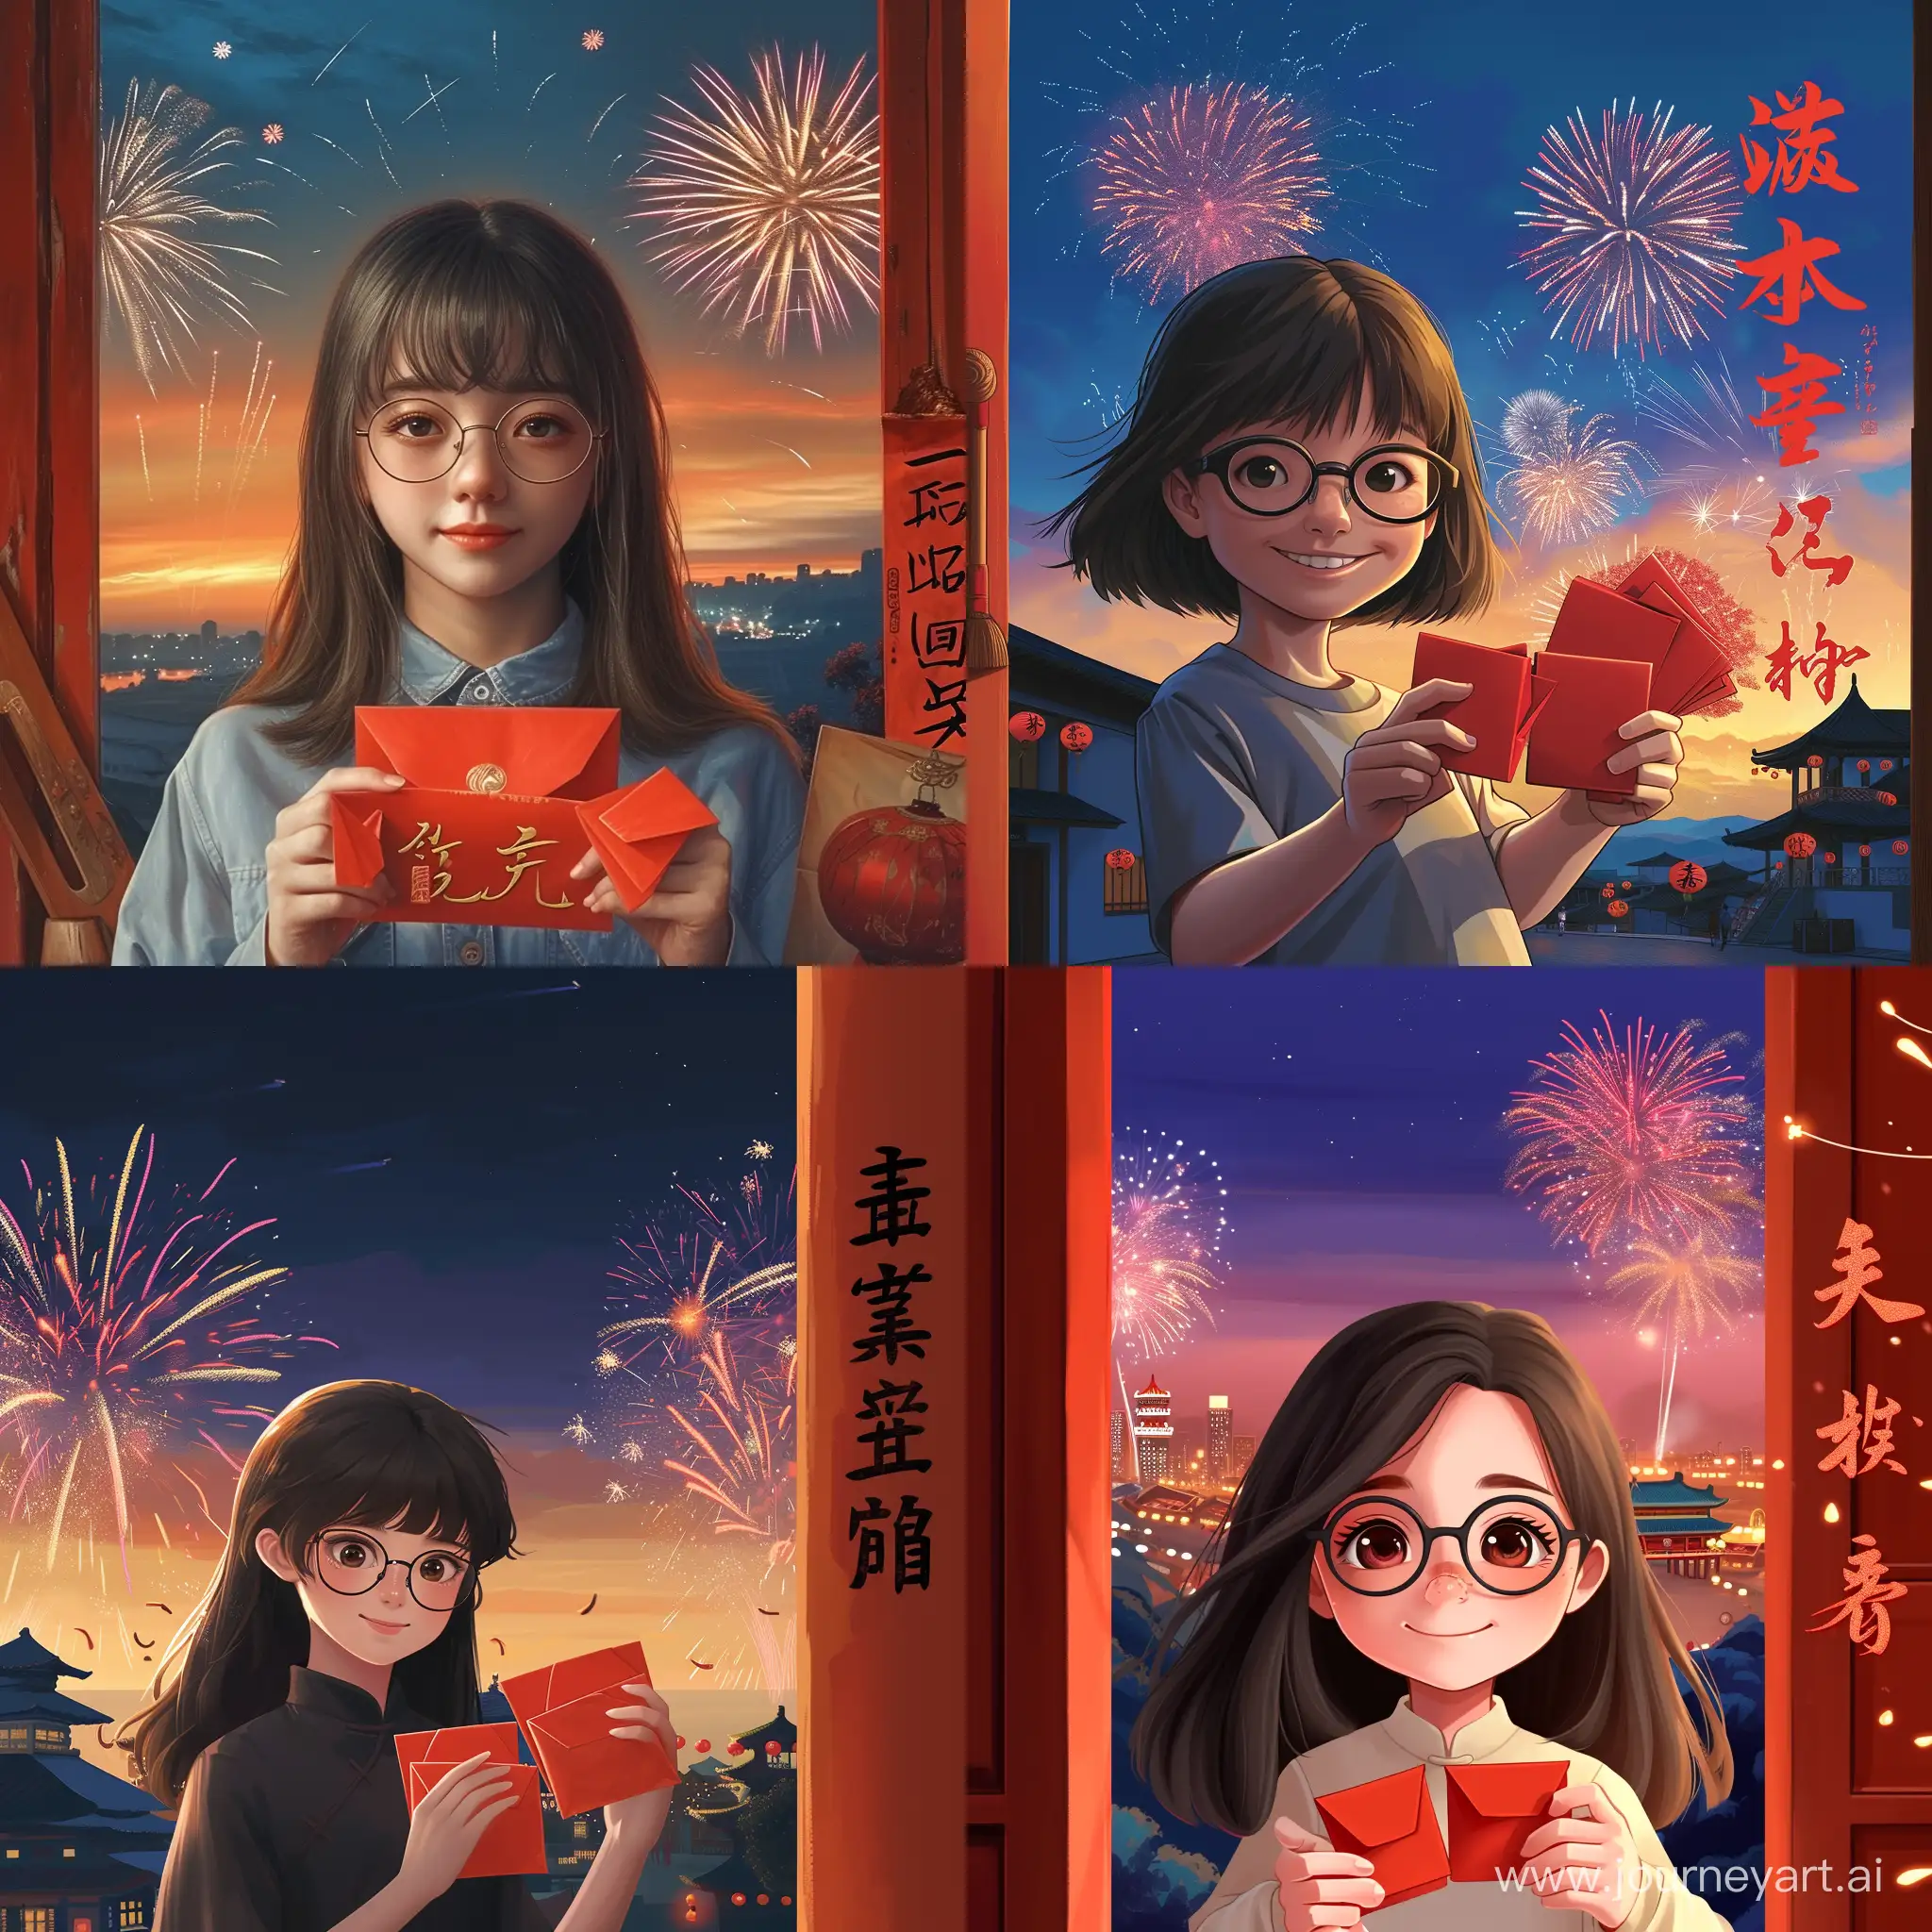  一个脸蛋有点圆圆的女孩25岁，带着眼镜，两只手拿着红包往前送，背景是中国春节的景象，天空中还有烟花，黄昏时刻，画面右边用中文汉字：苹苹来给你送红包了